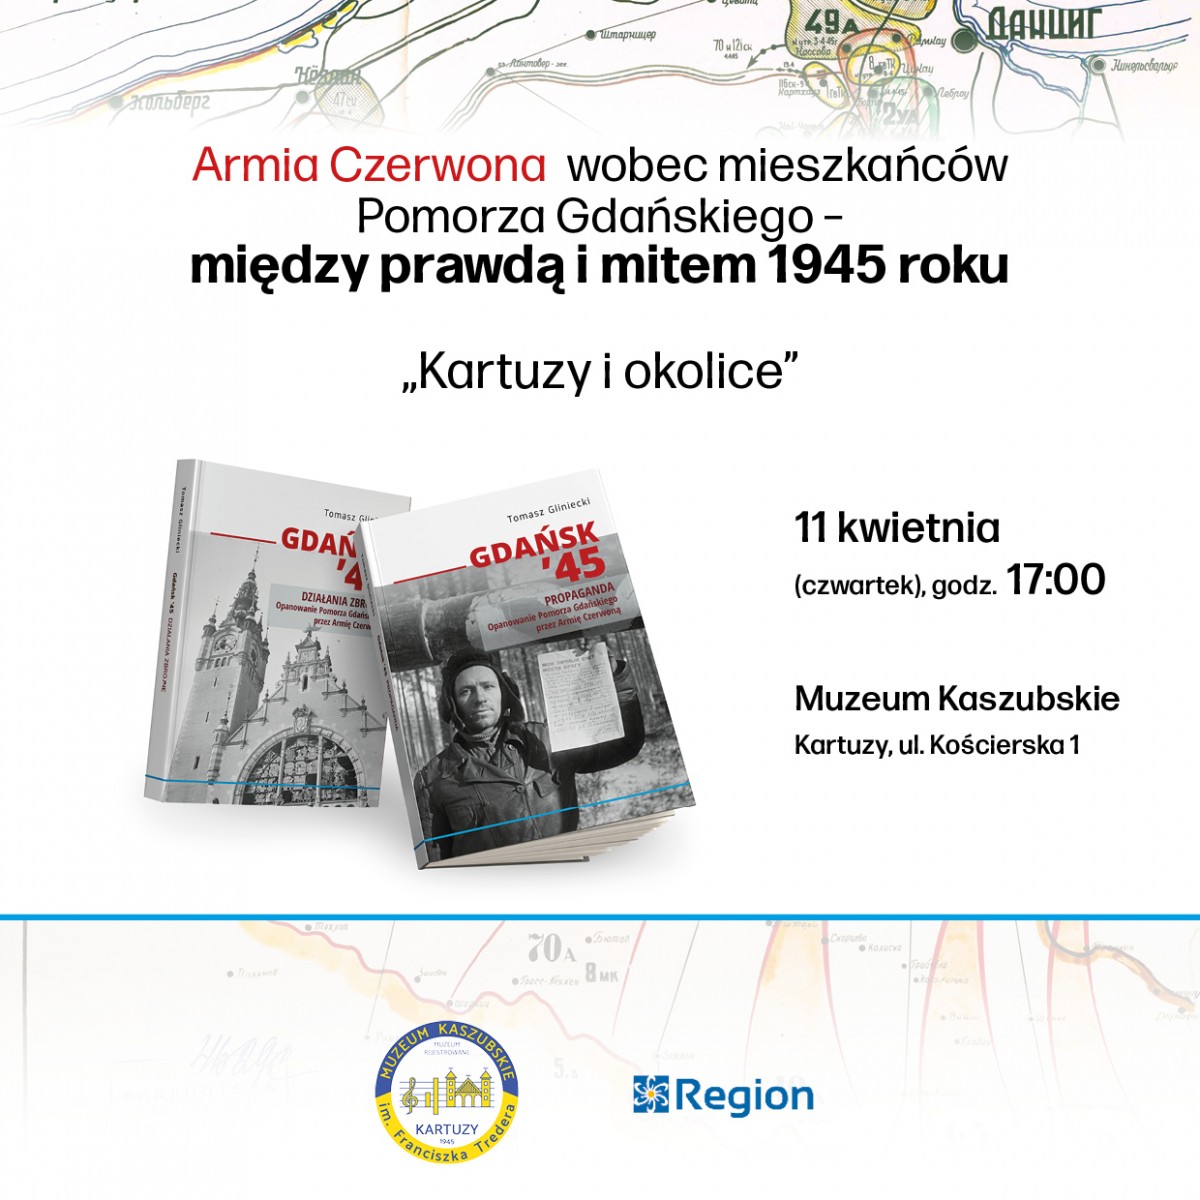 Promocja publikacji dra Tomasza Glinieckiego